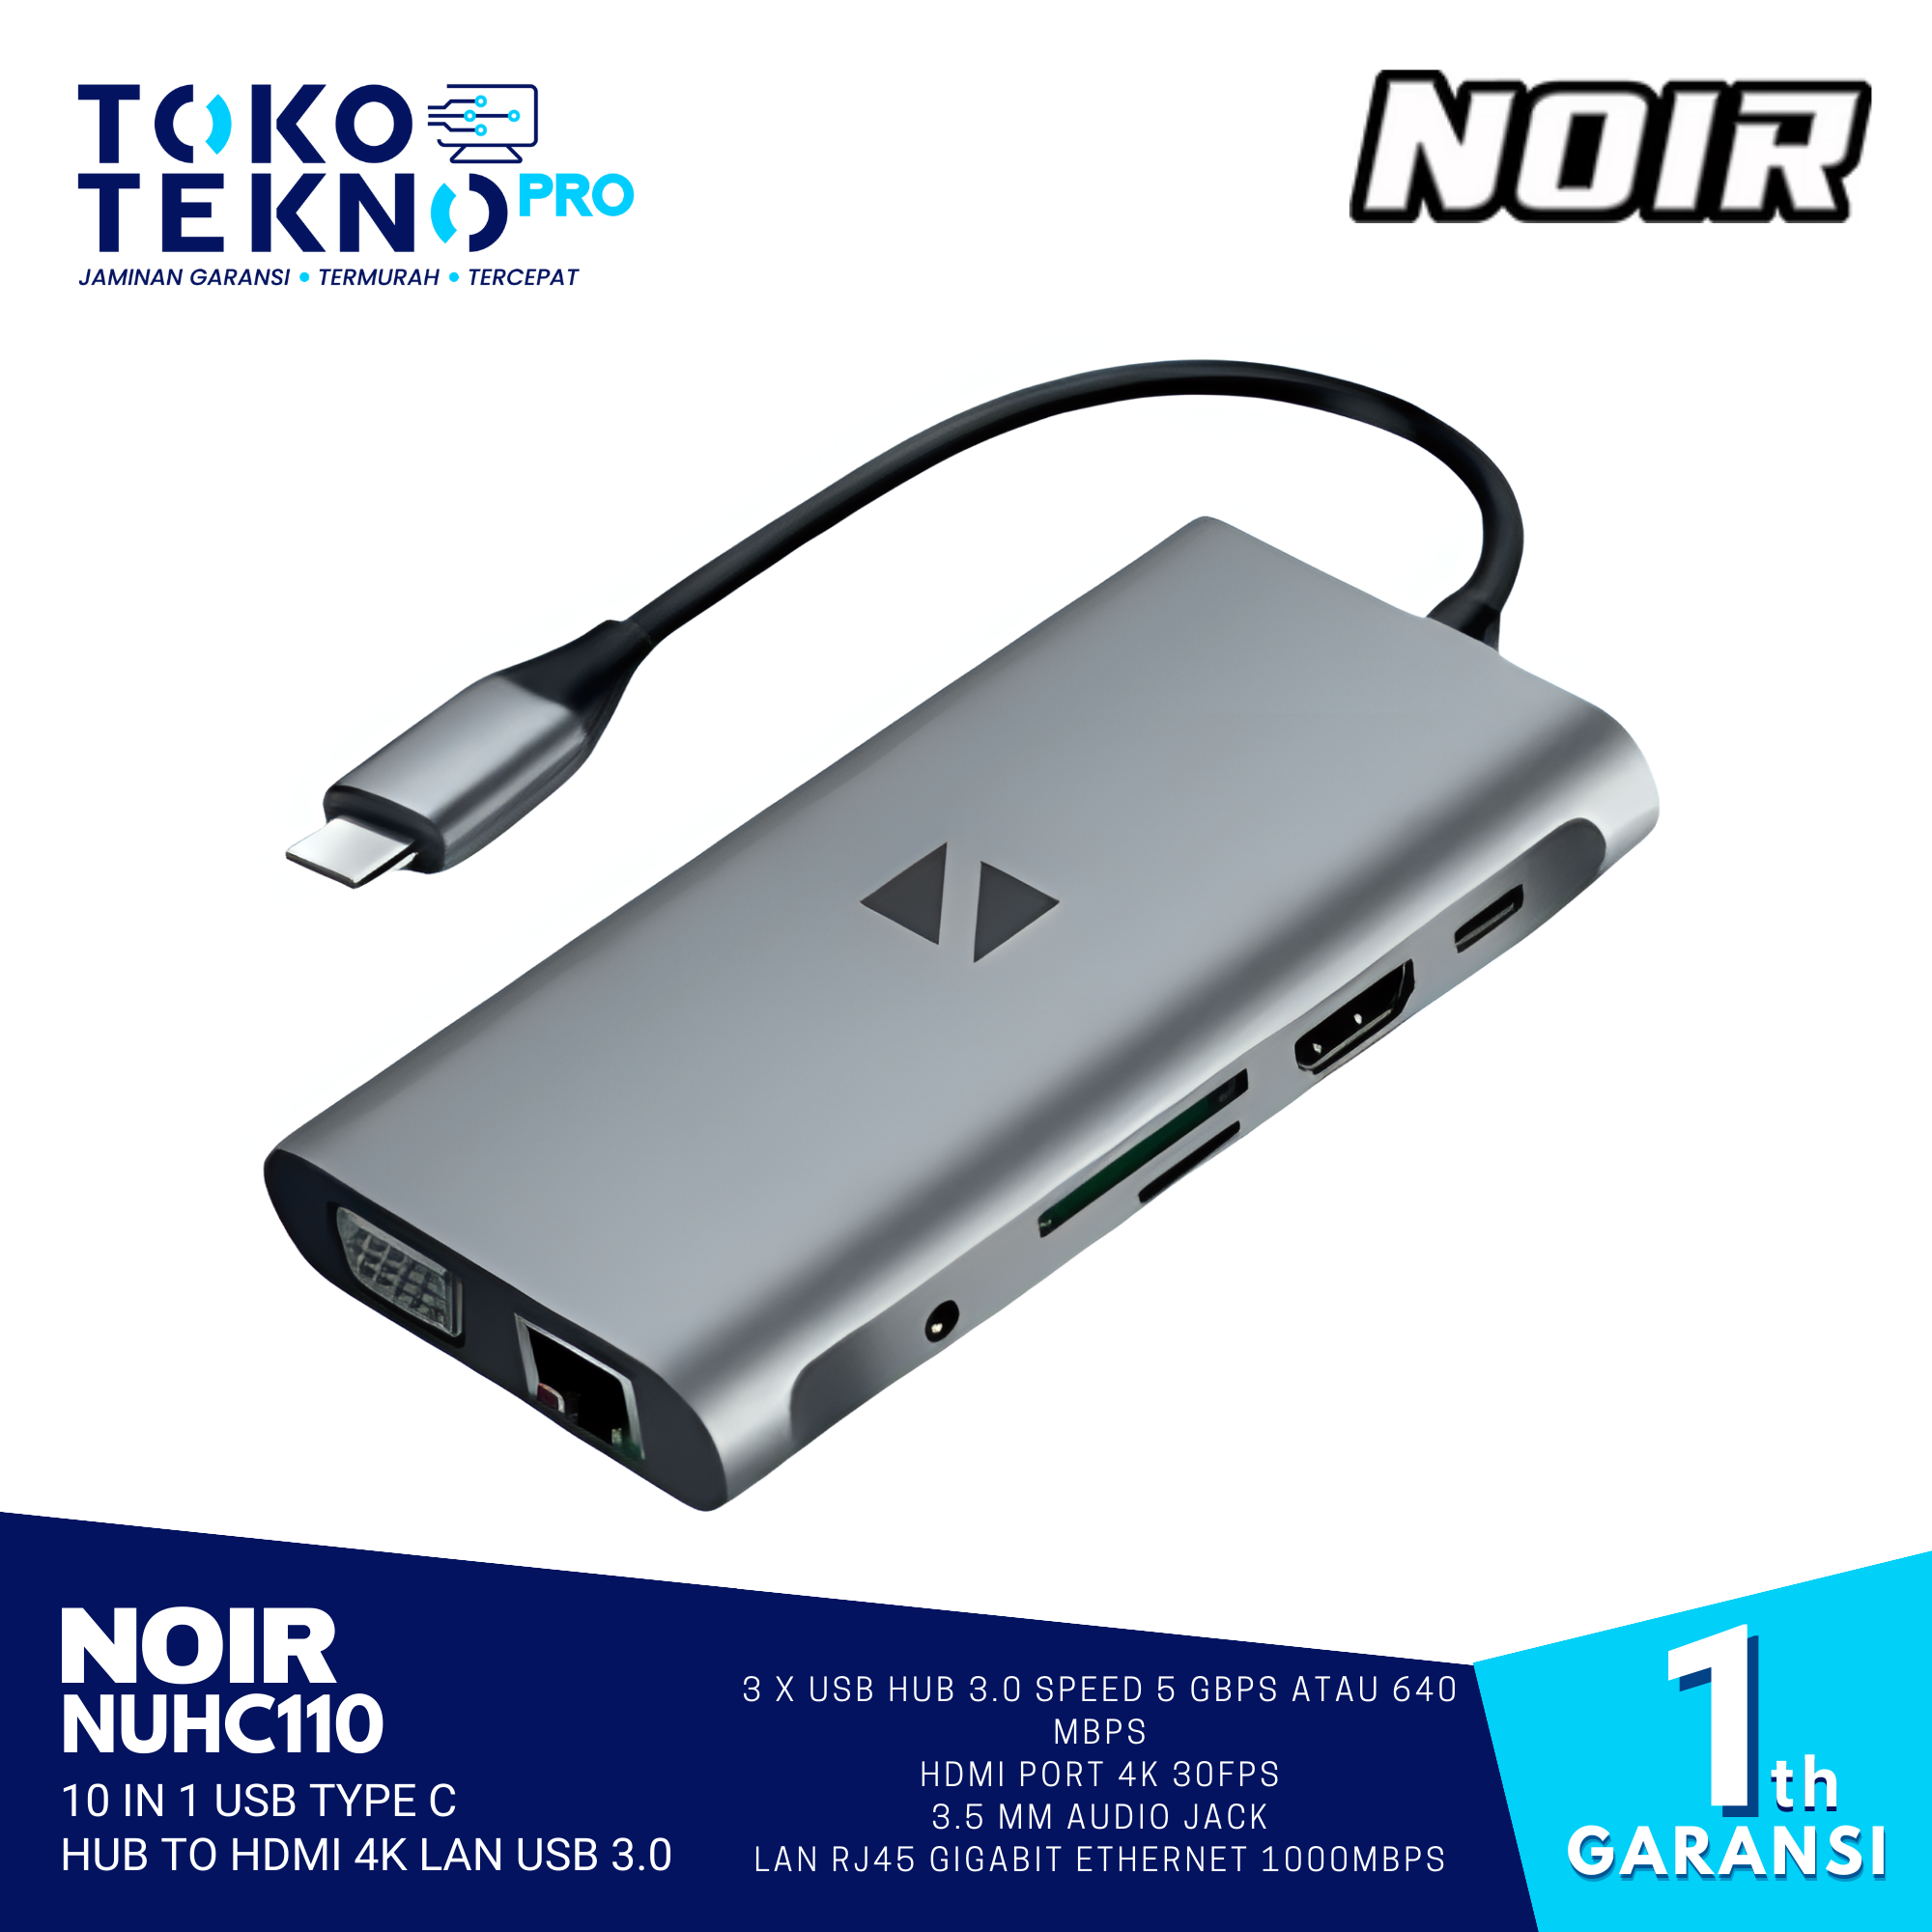 Noir NUHC110 10 in 1 USB TYPE C HUB TO HDMI 4K LAN USB 3.0